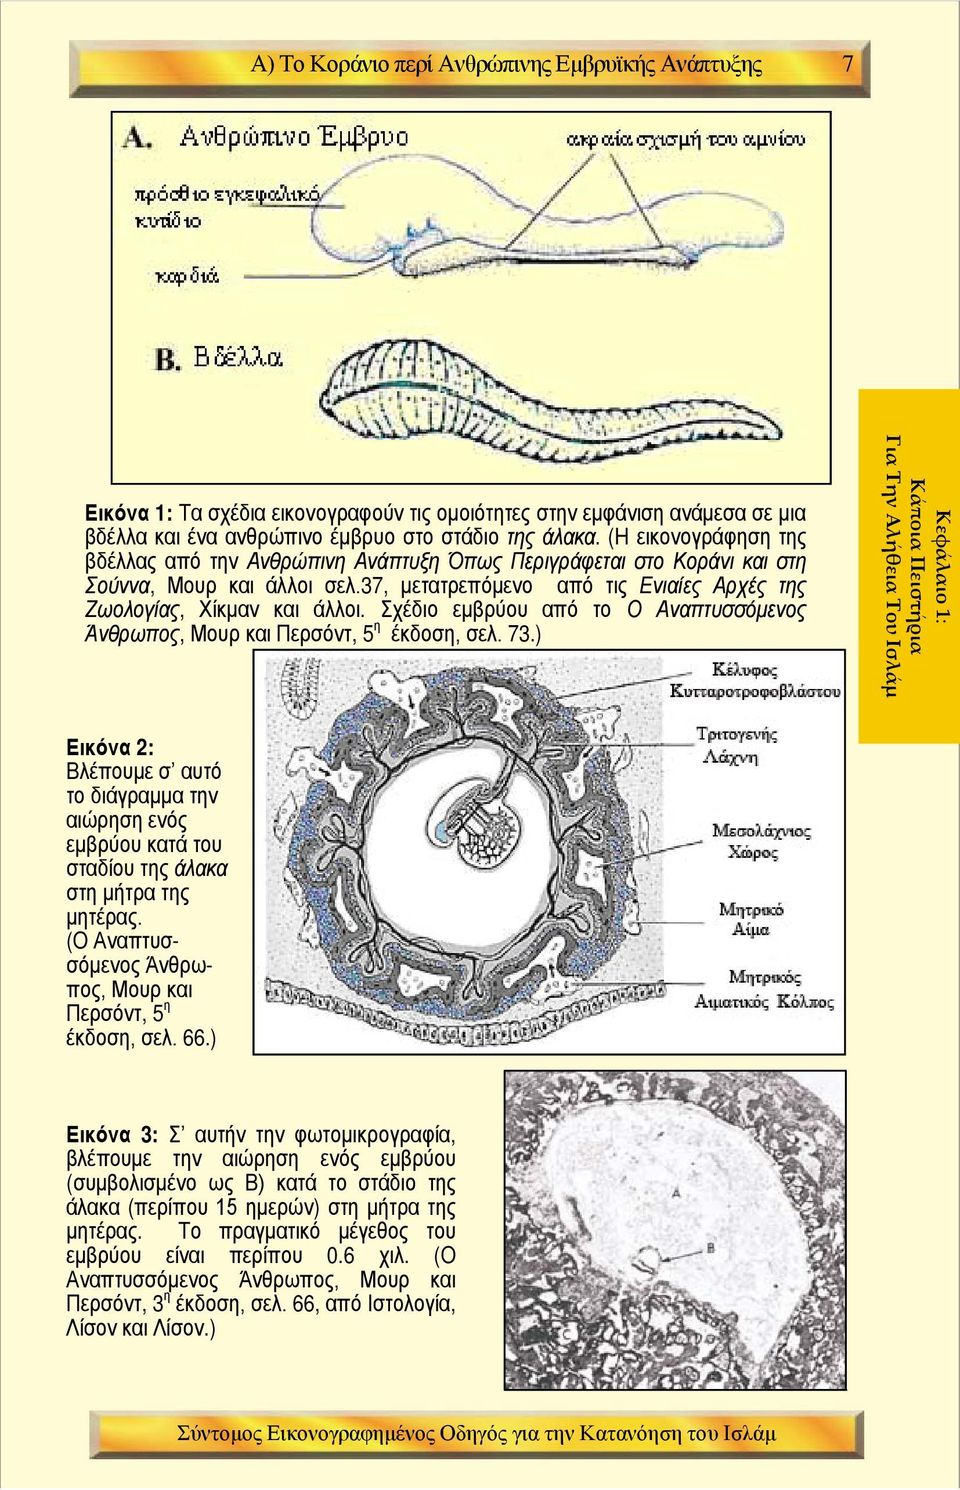 Σχέδιο εμβρύου από το Ο Αναπτυσσόμενος Άνθρωπος, Μουρ και Περσόντ, 5 η έκδοση, σελ. 73.